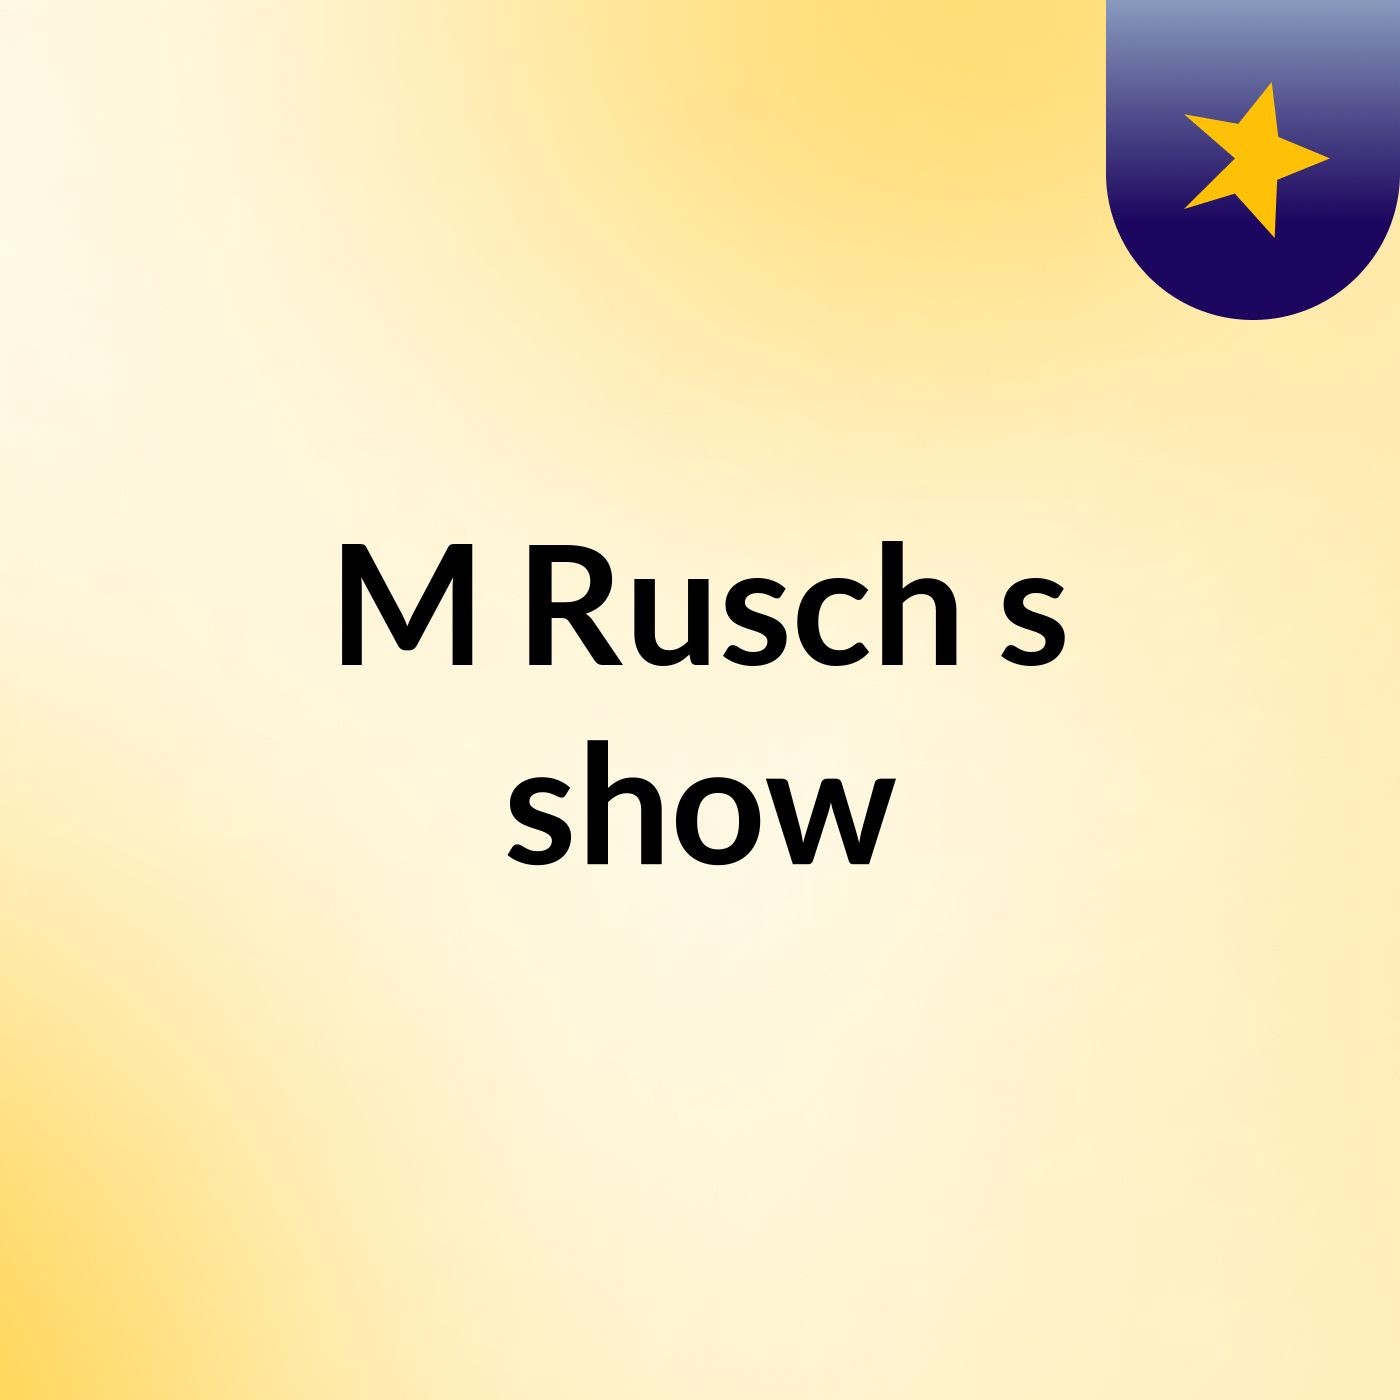 M Rusch's show